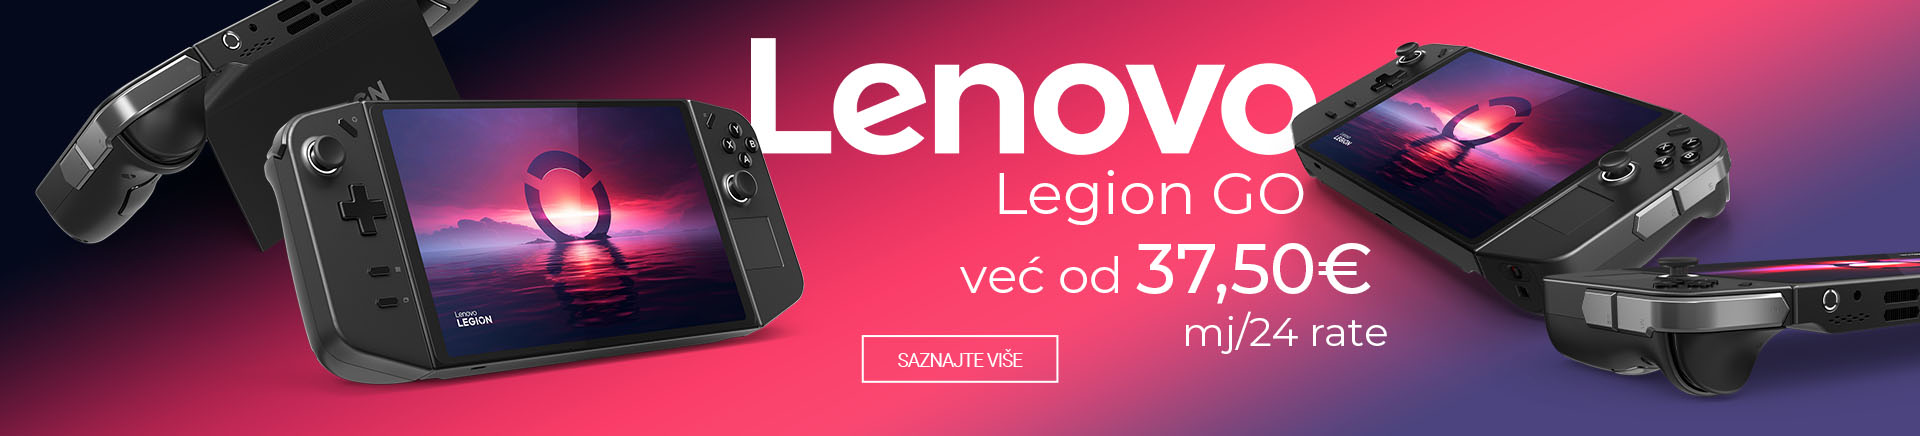 HR~Lenovo Legion GO MOBILE 760x872.jpg